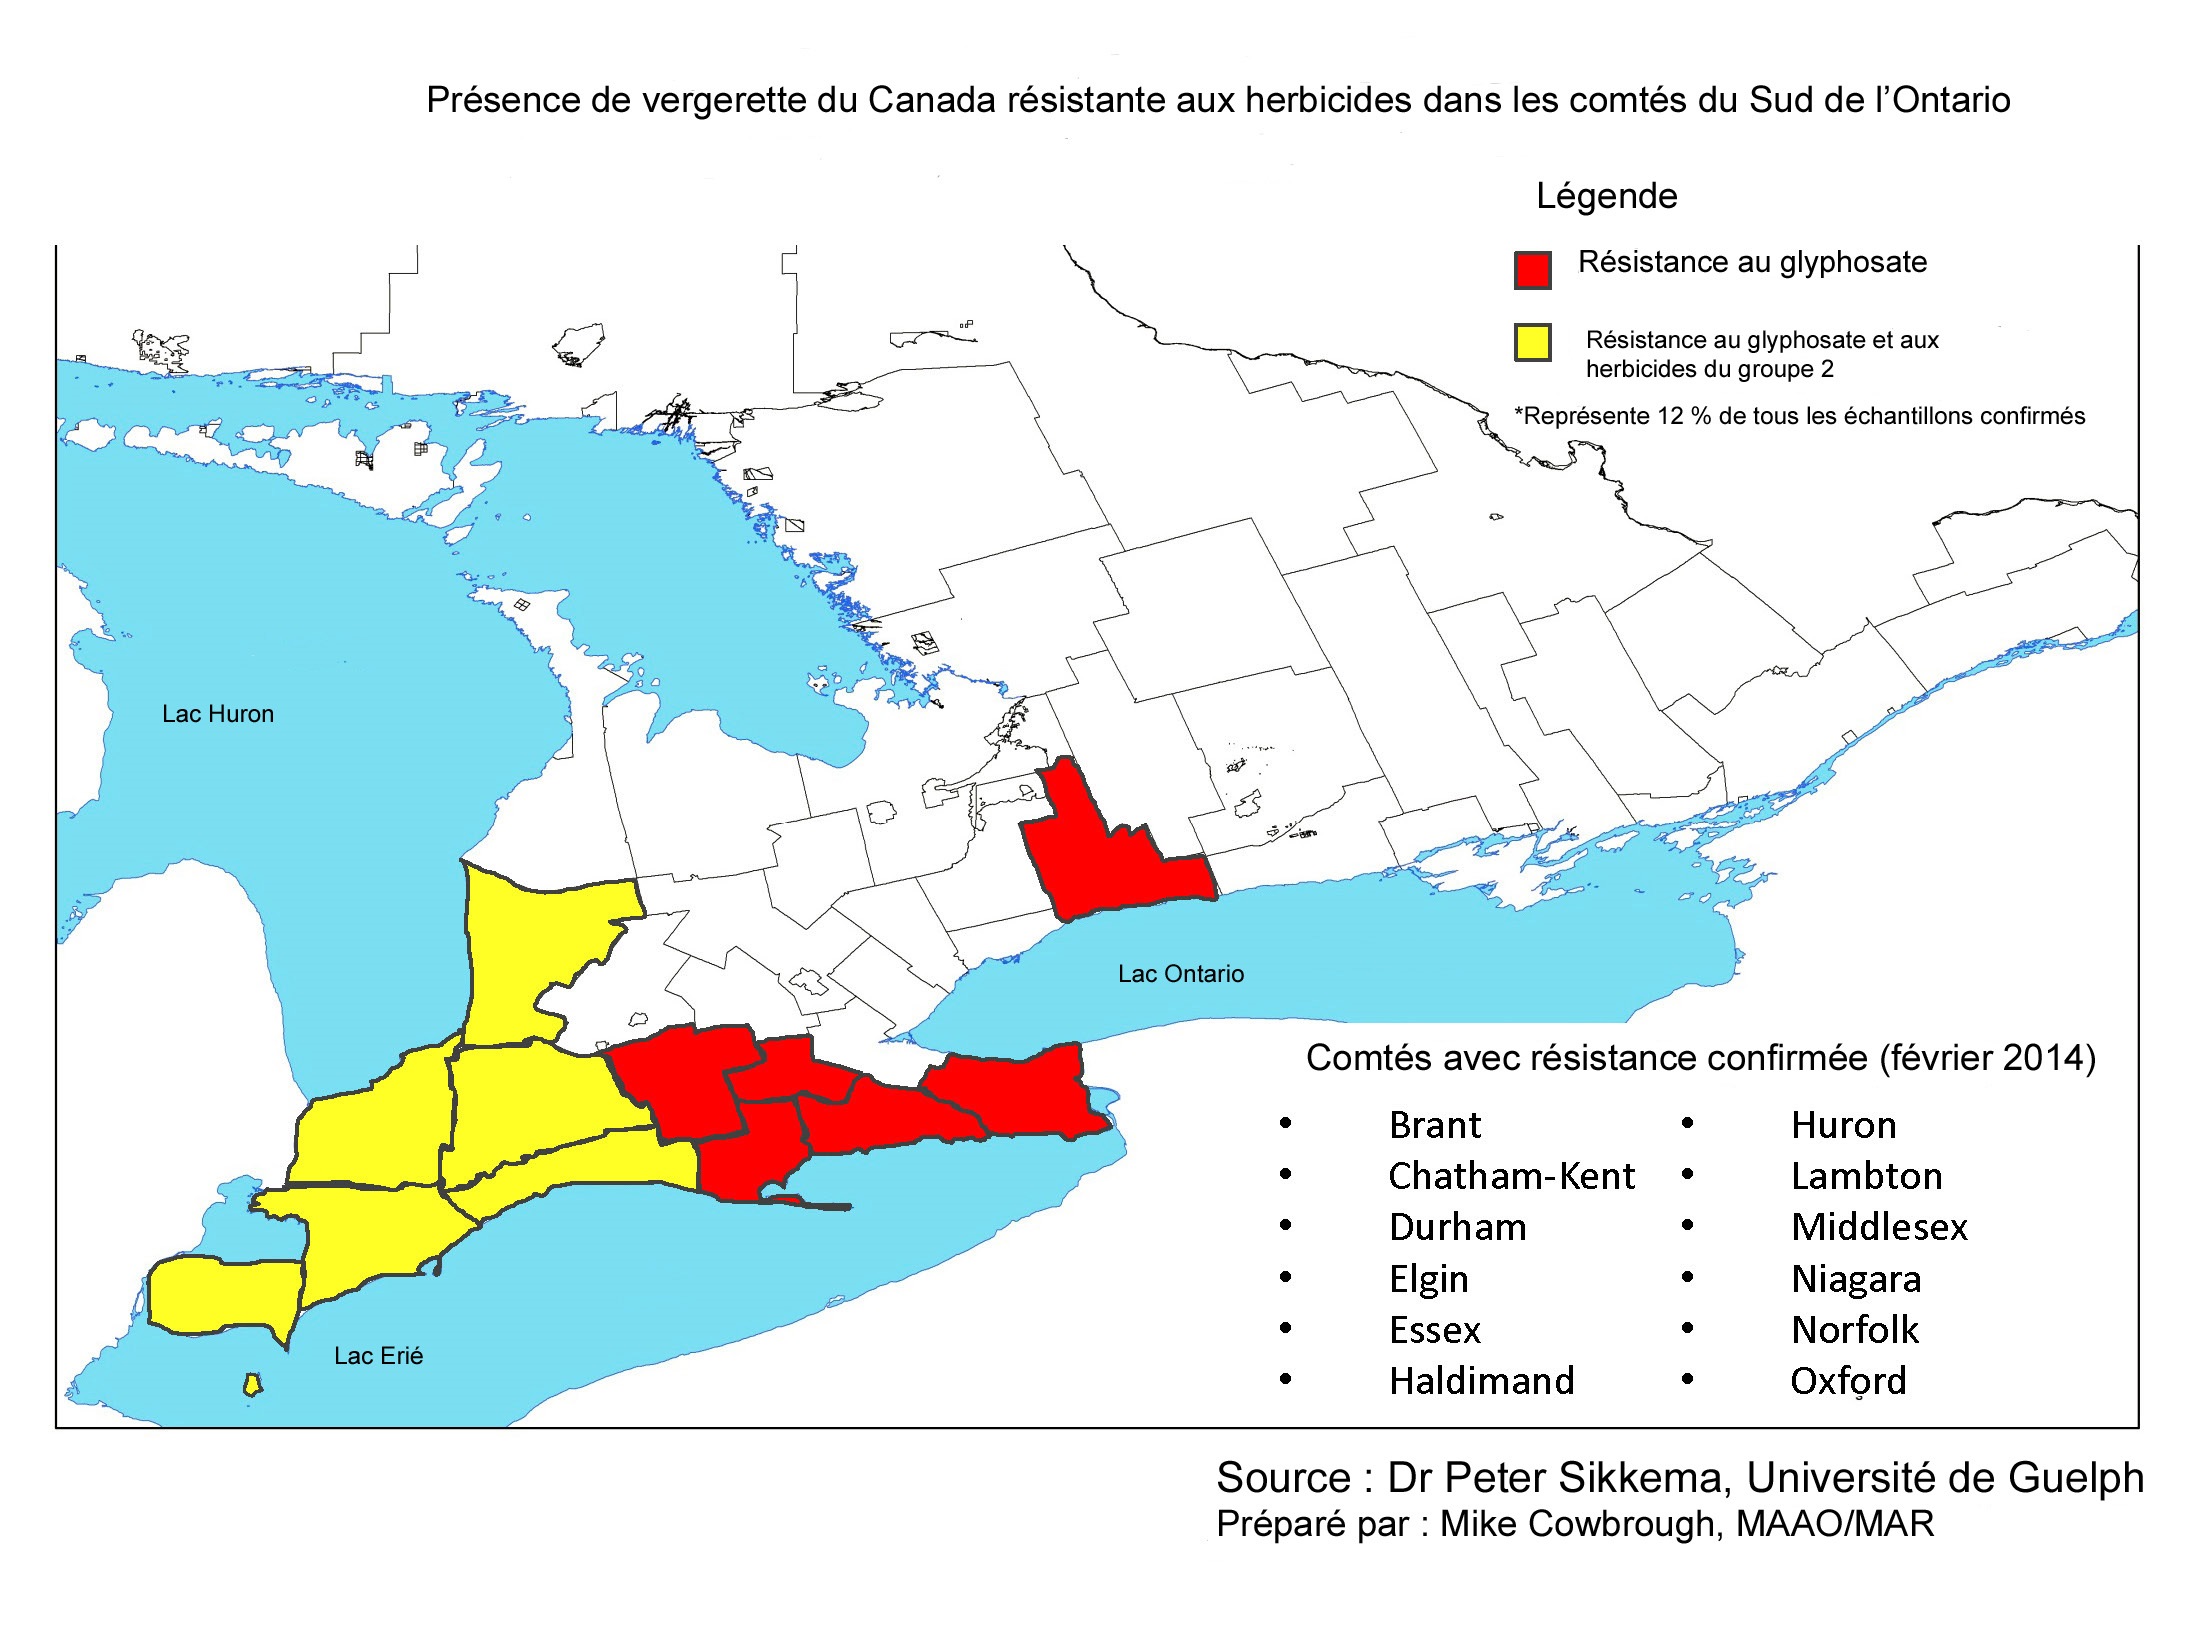 Carte de l'Ontario montrant les six comtés les plus au sud surlignés en jaune et cinq comtés à l'est adjacent au Lac Érié surlignés en rouge. La région de Niagara est aussi surlignée en rouge.